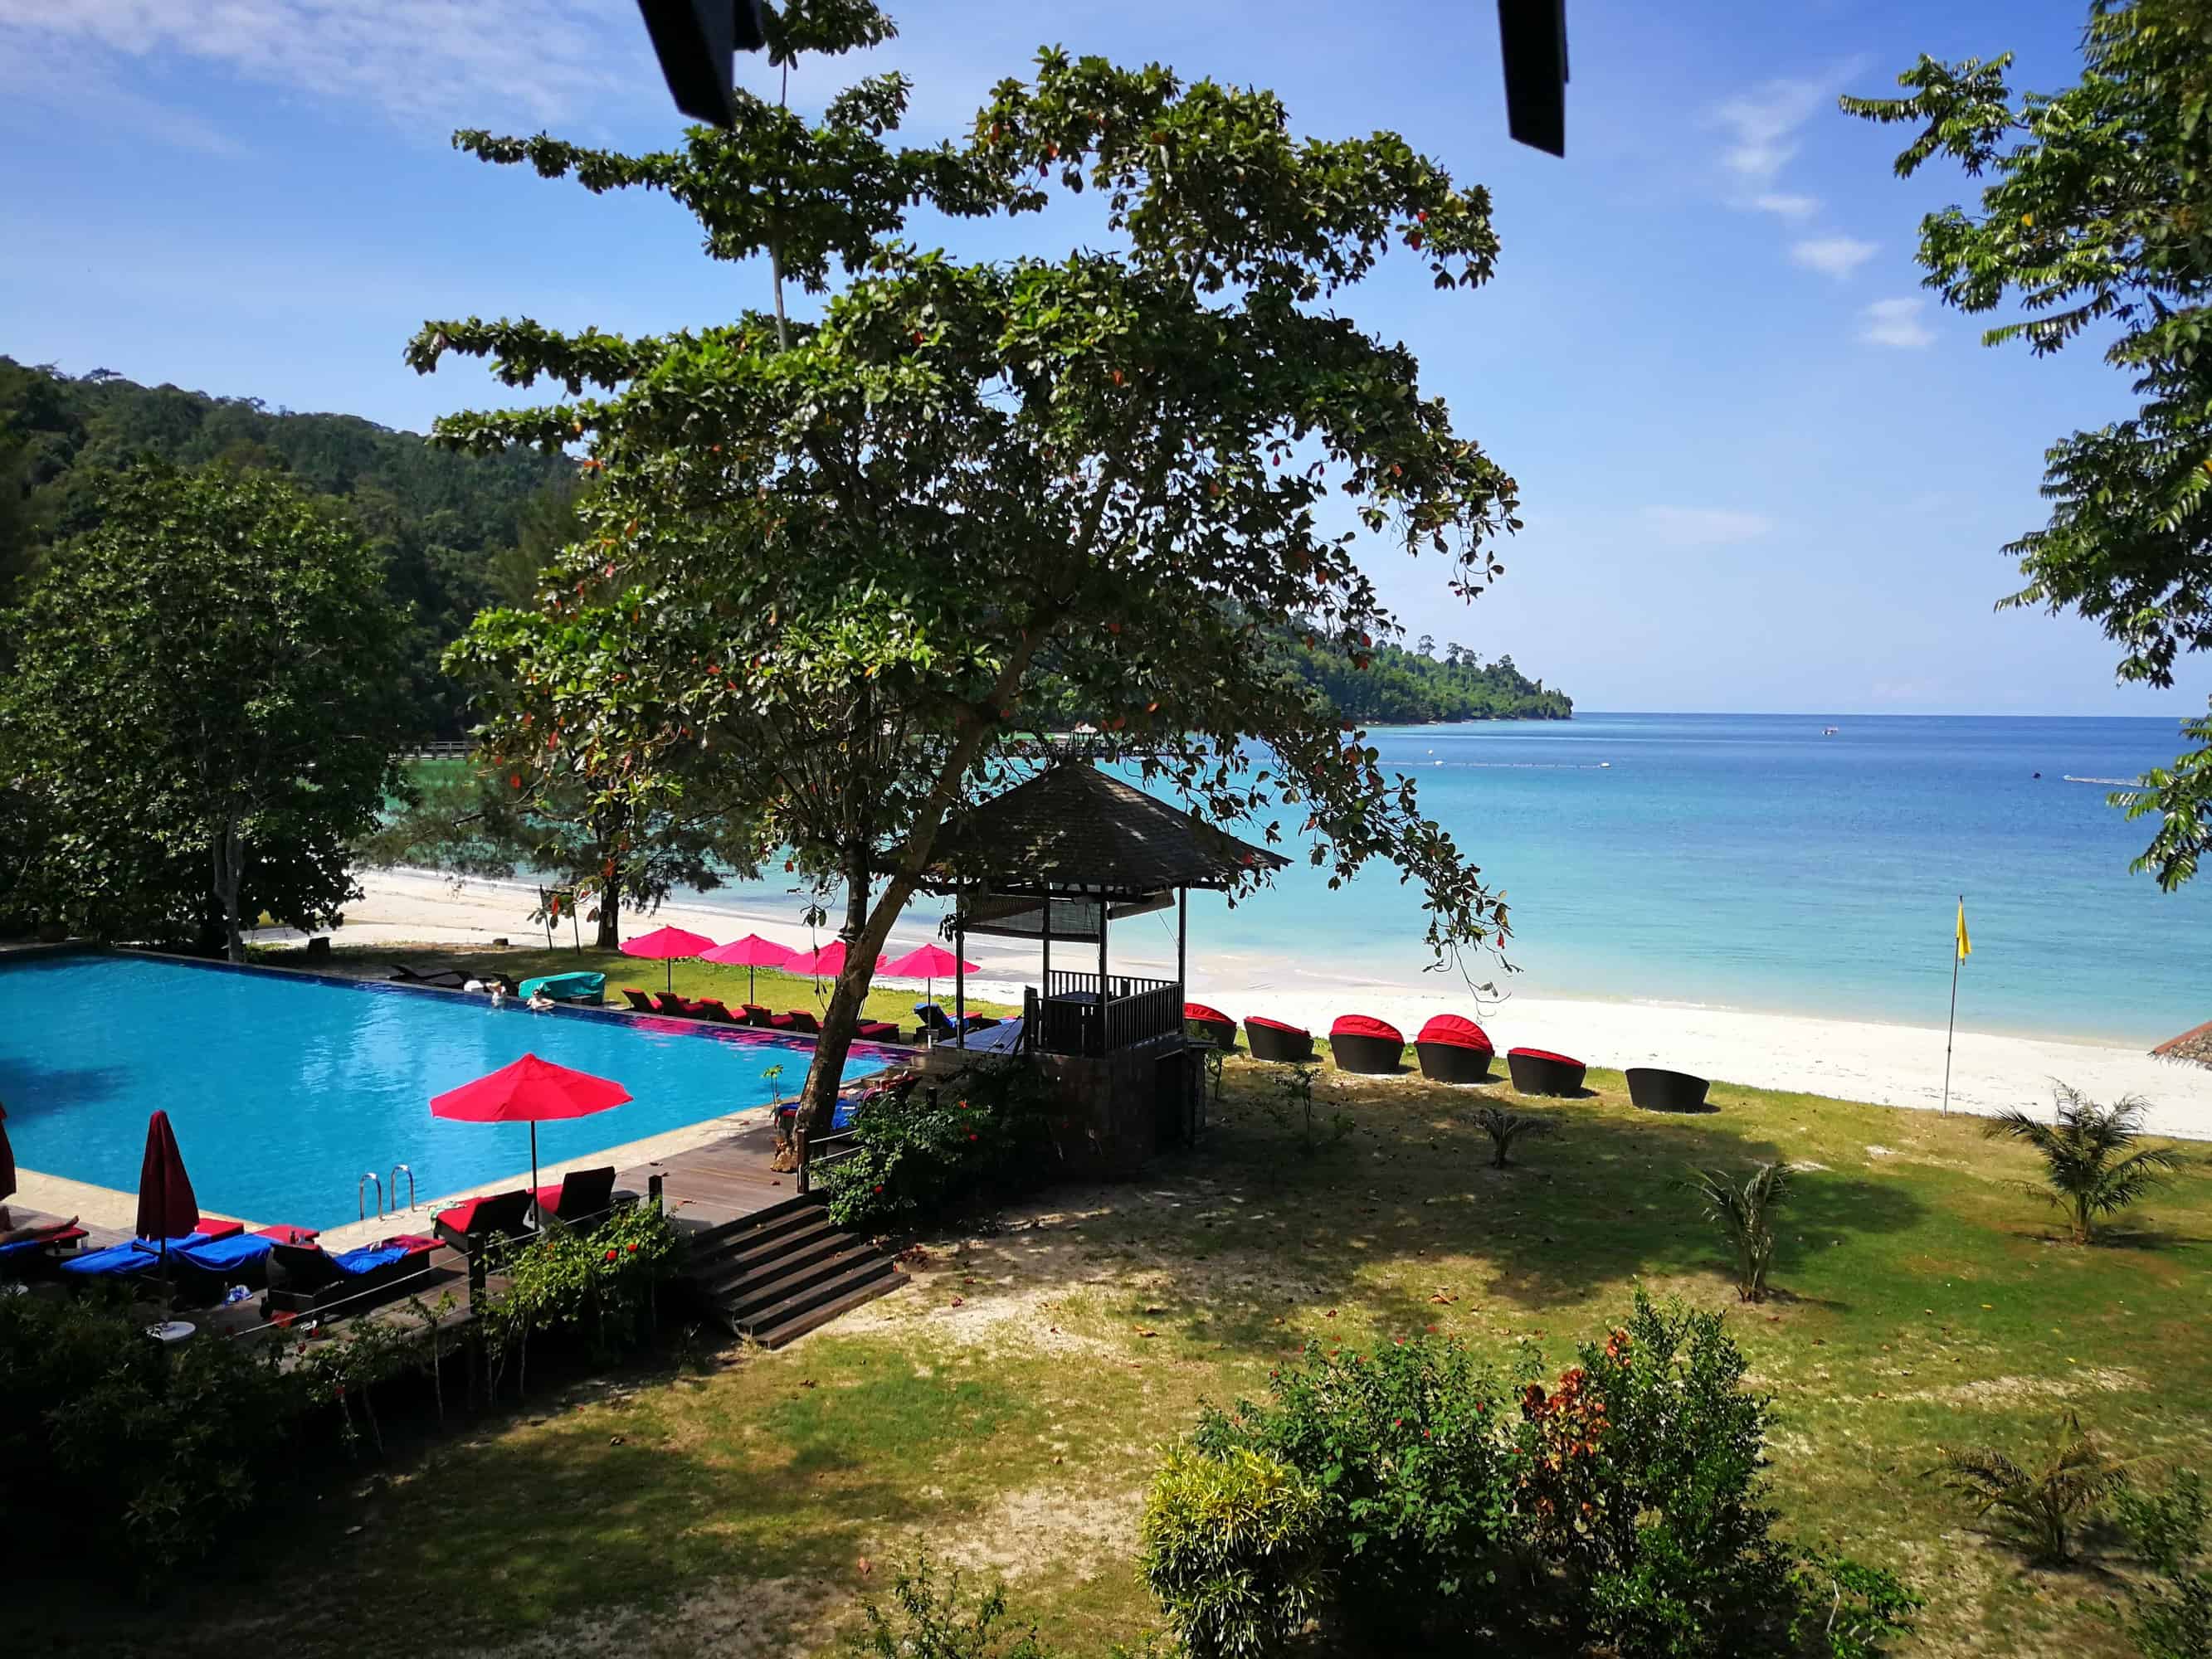 Choosing the right beach around Kota Kinabalu - Experience Travel Group